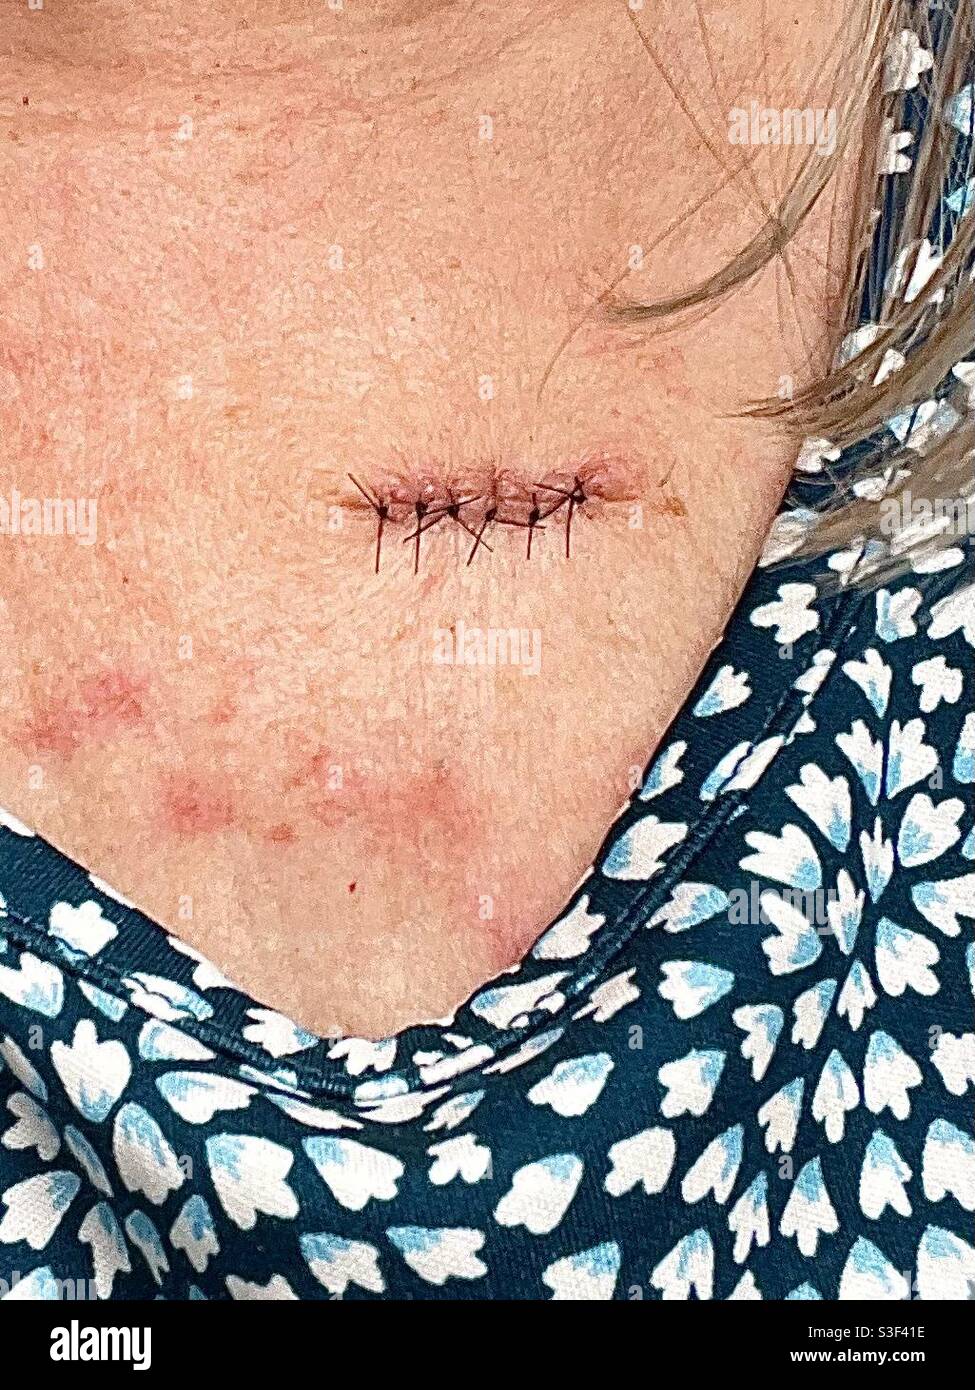 Gros plan des points de suture après une intervention médicale Banque D'Images